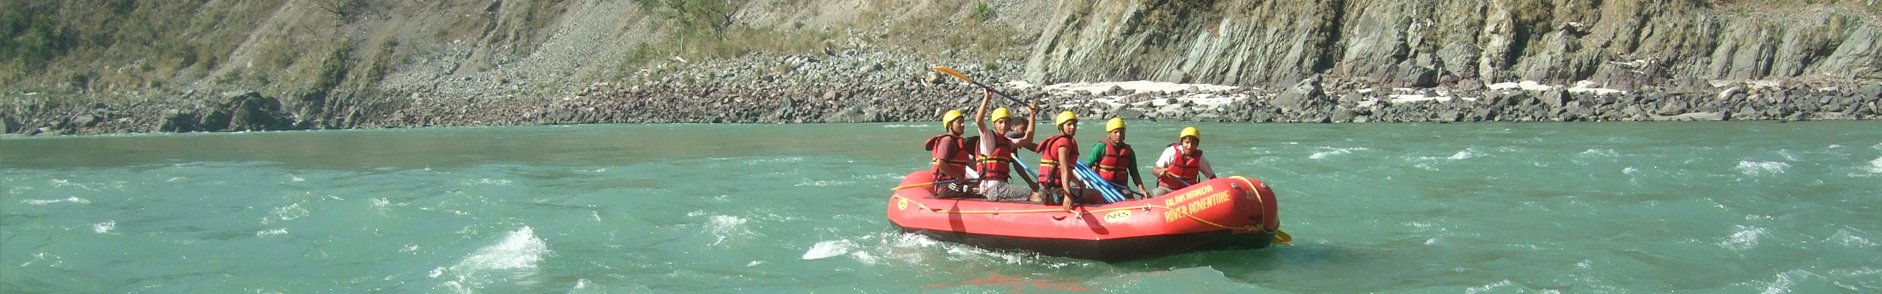 Shivpuri Rishikesh River Rafting Tour